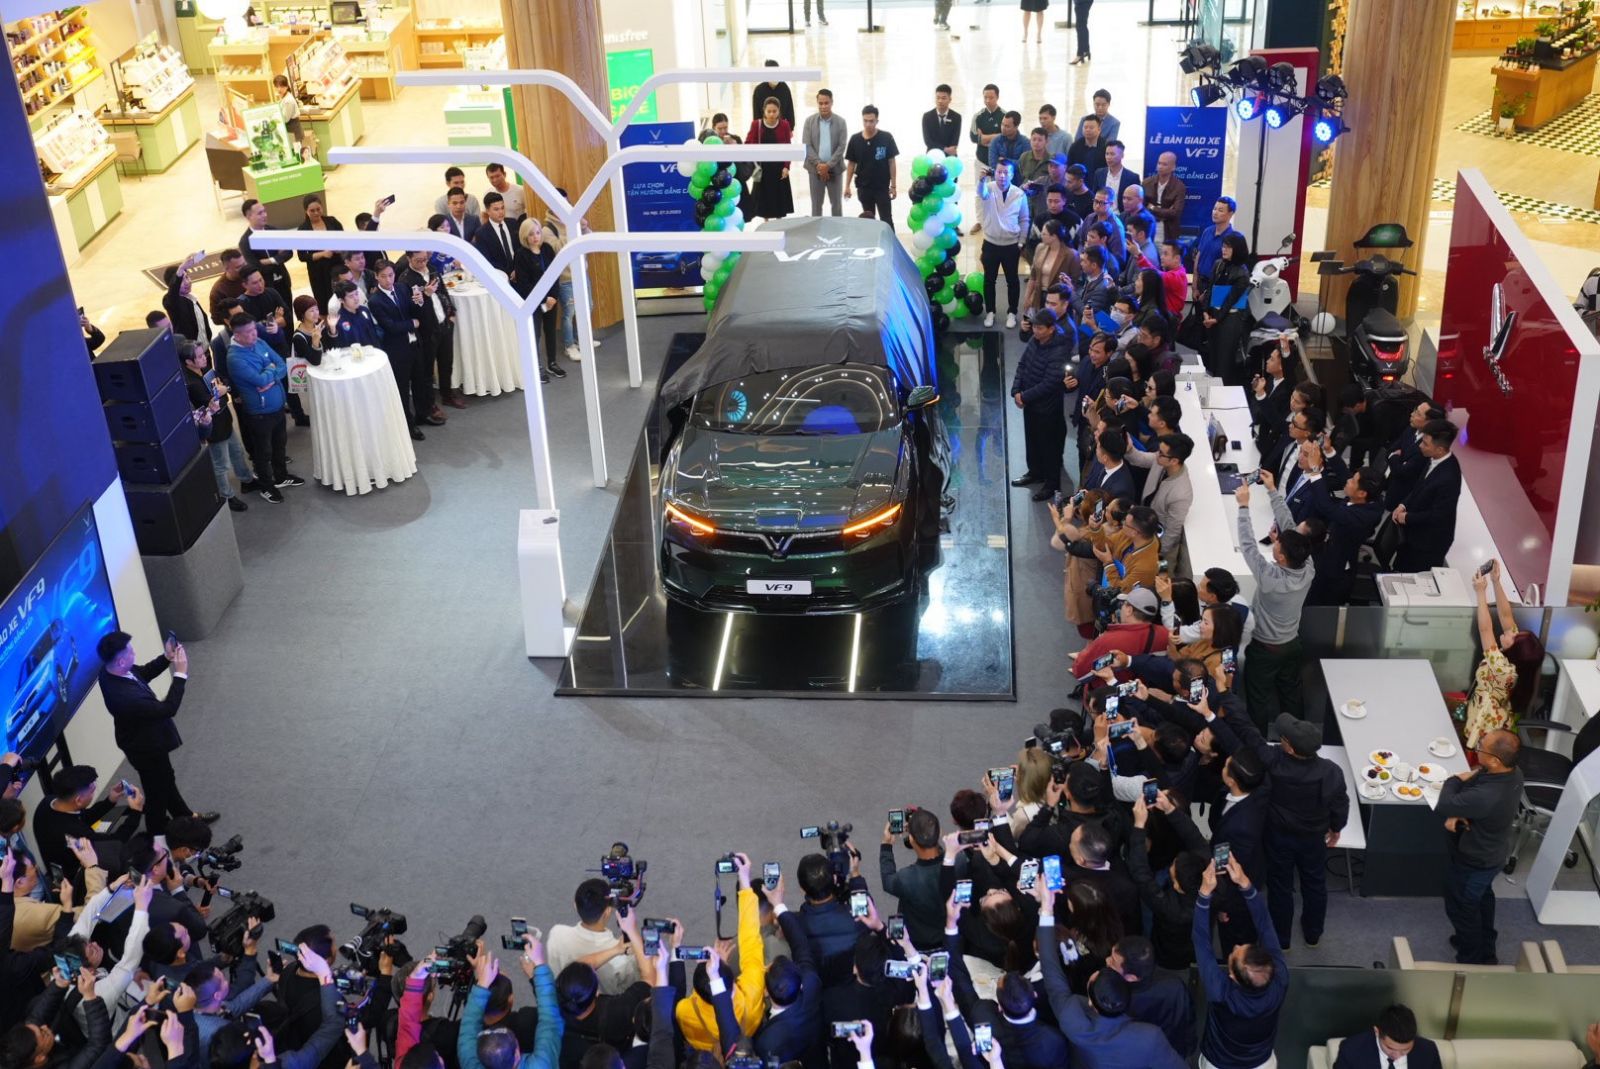 Lễ bàn giao xe VF 9 cho các khách hàng đầu tiên tại Việt Nam được VinFast tổ chức sáng 27/3/2023 tại các showroom VinFast Ocean Park (Hà Nội), VinFast Ngô Quyền (Đà Nẵng) và VinFast Landmark 81 (TP. HCM), thu hút sự quan tâm, chú ý của đông đảo khách hàng.